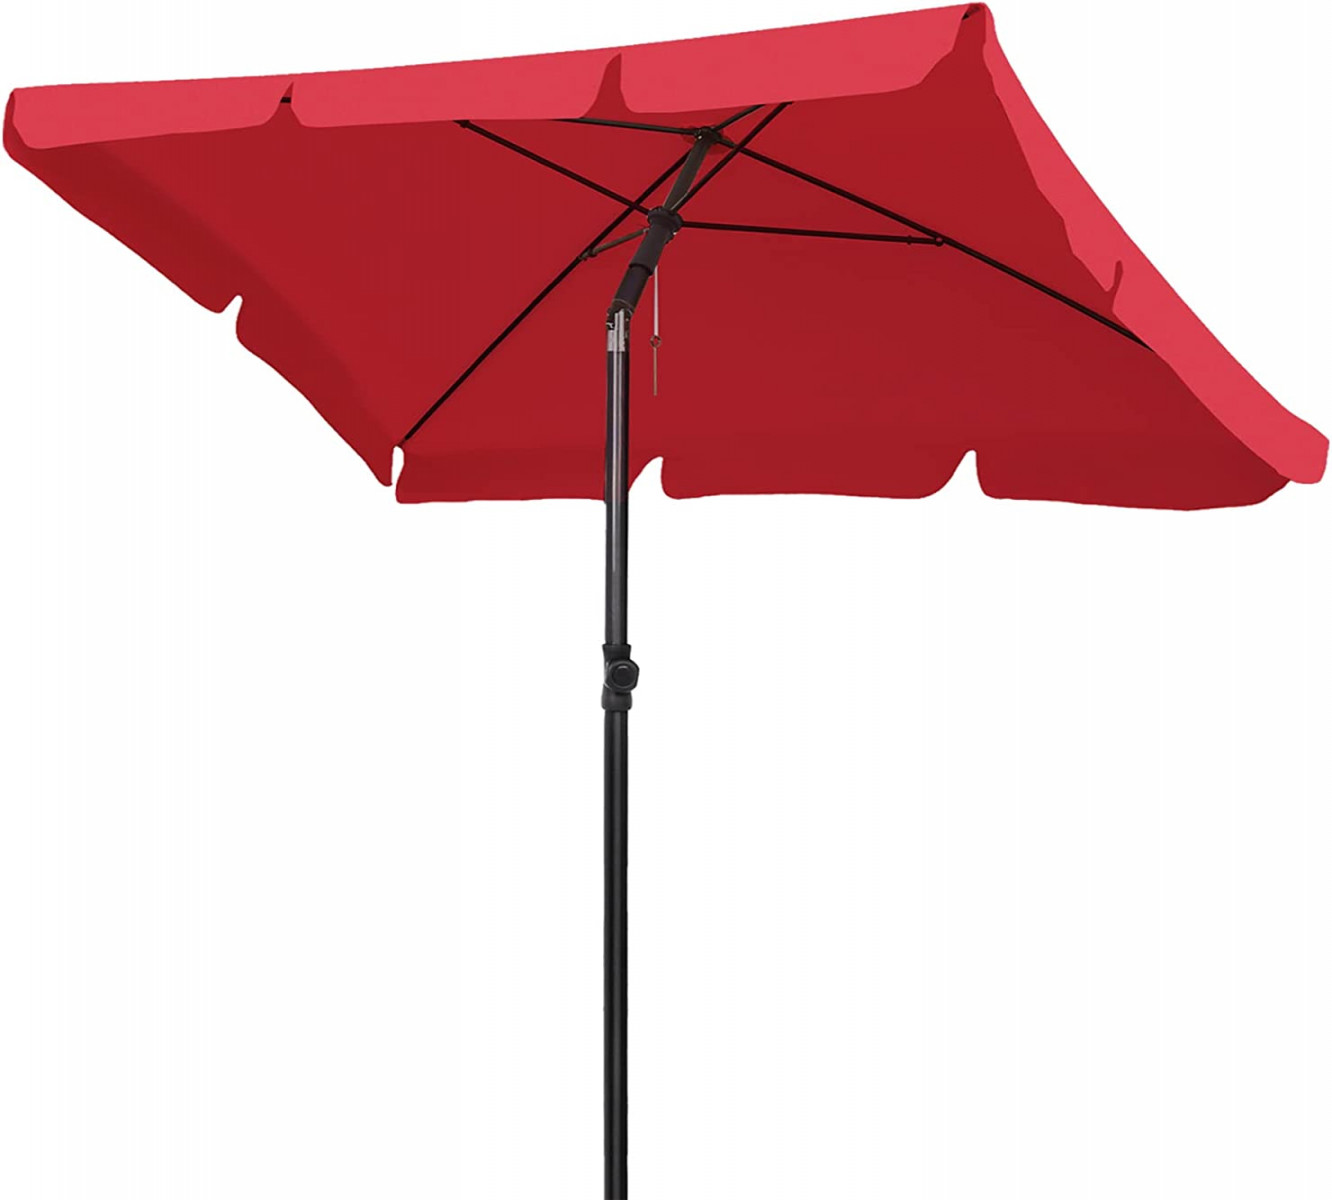 x  cm Rectangular Parasol, Market Umbrella, Foldable Garden  Umbrella, Patio Umbrella, UV + Sun Protection, for Balcony,  g/m²